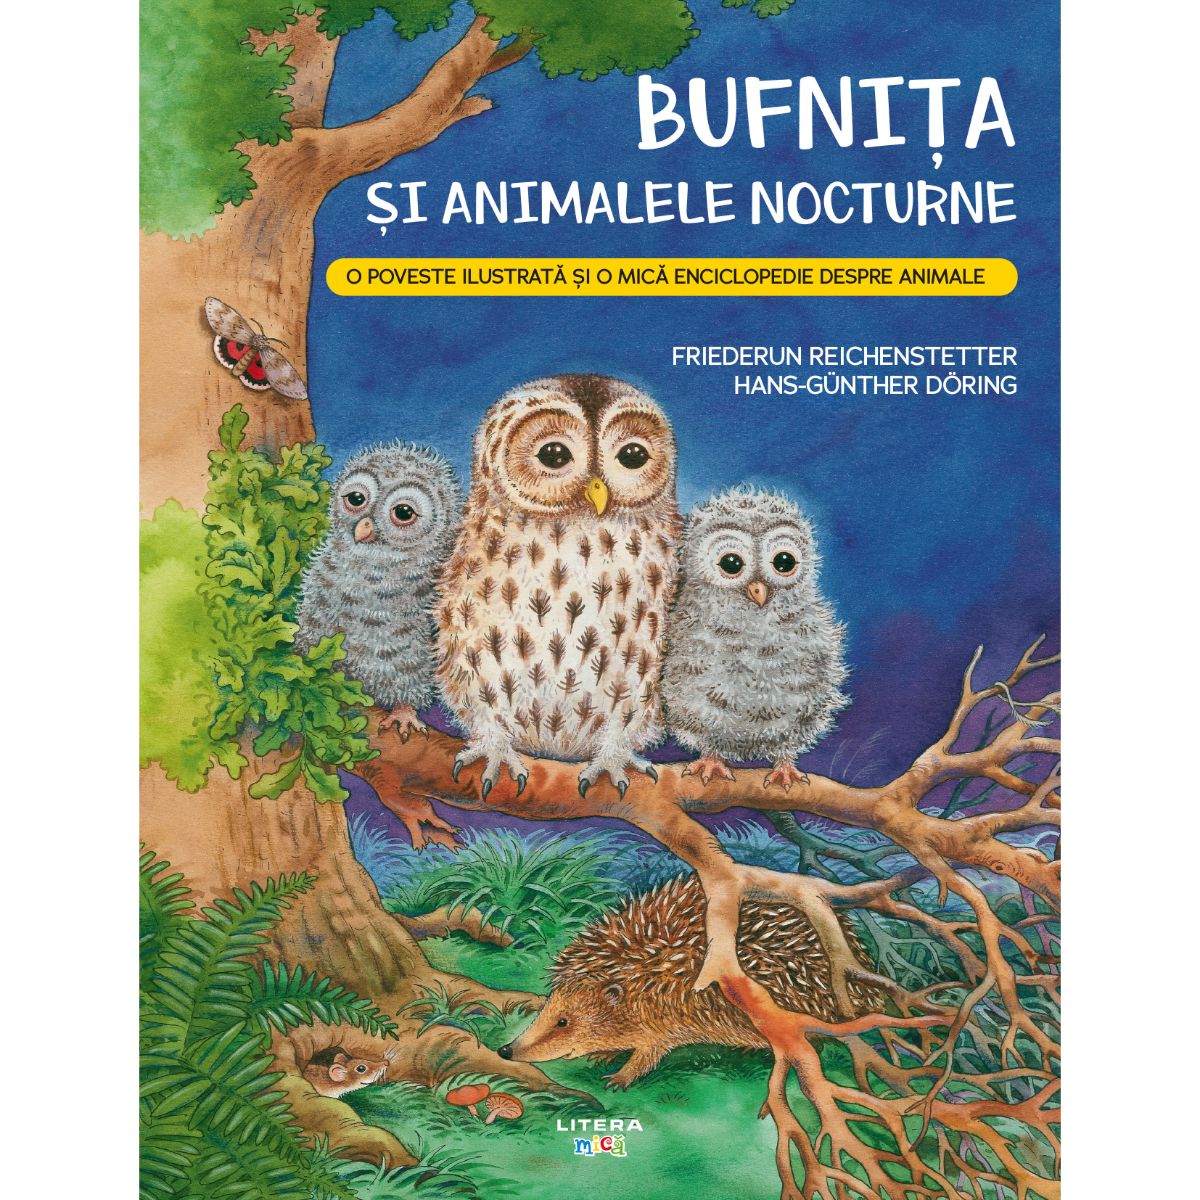 Bufnita si animalele nocturne, Friederun Reichenstetter Litera